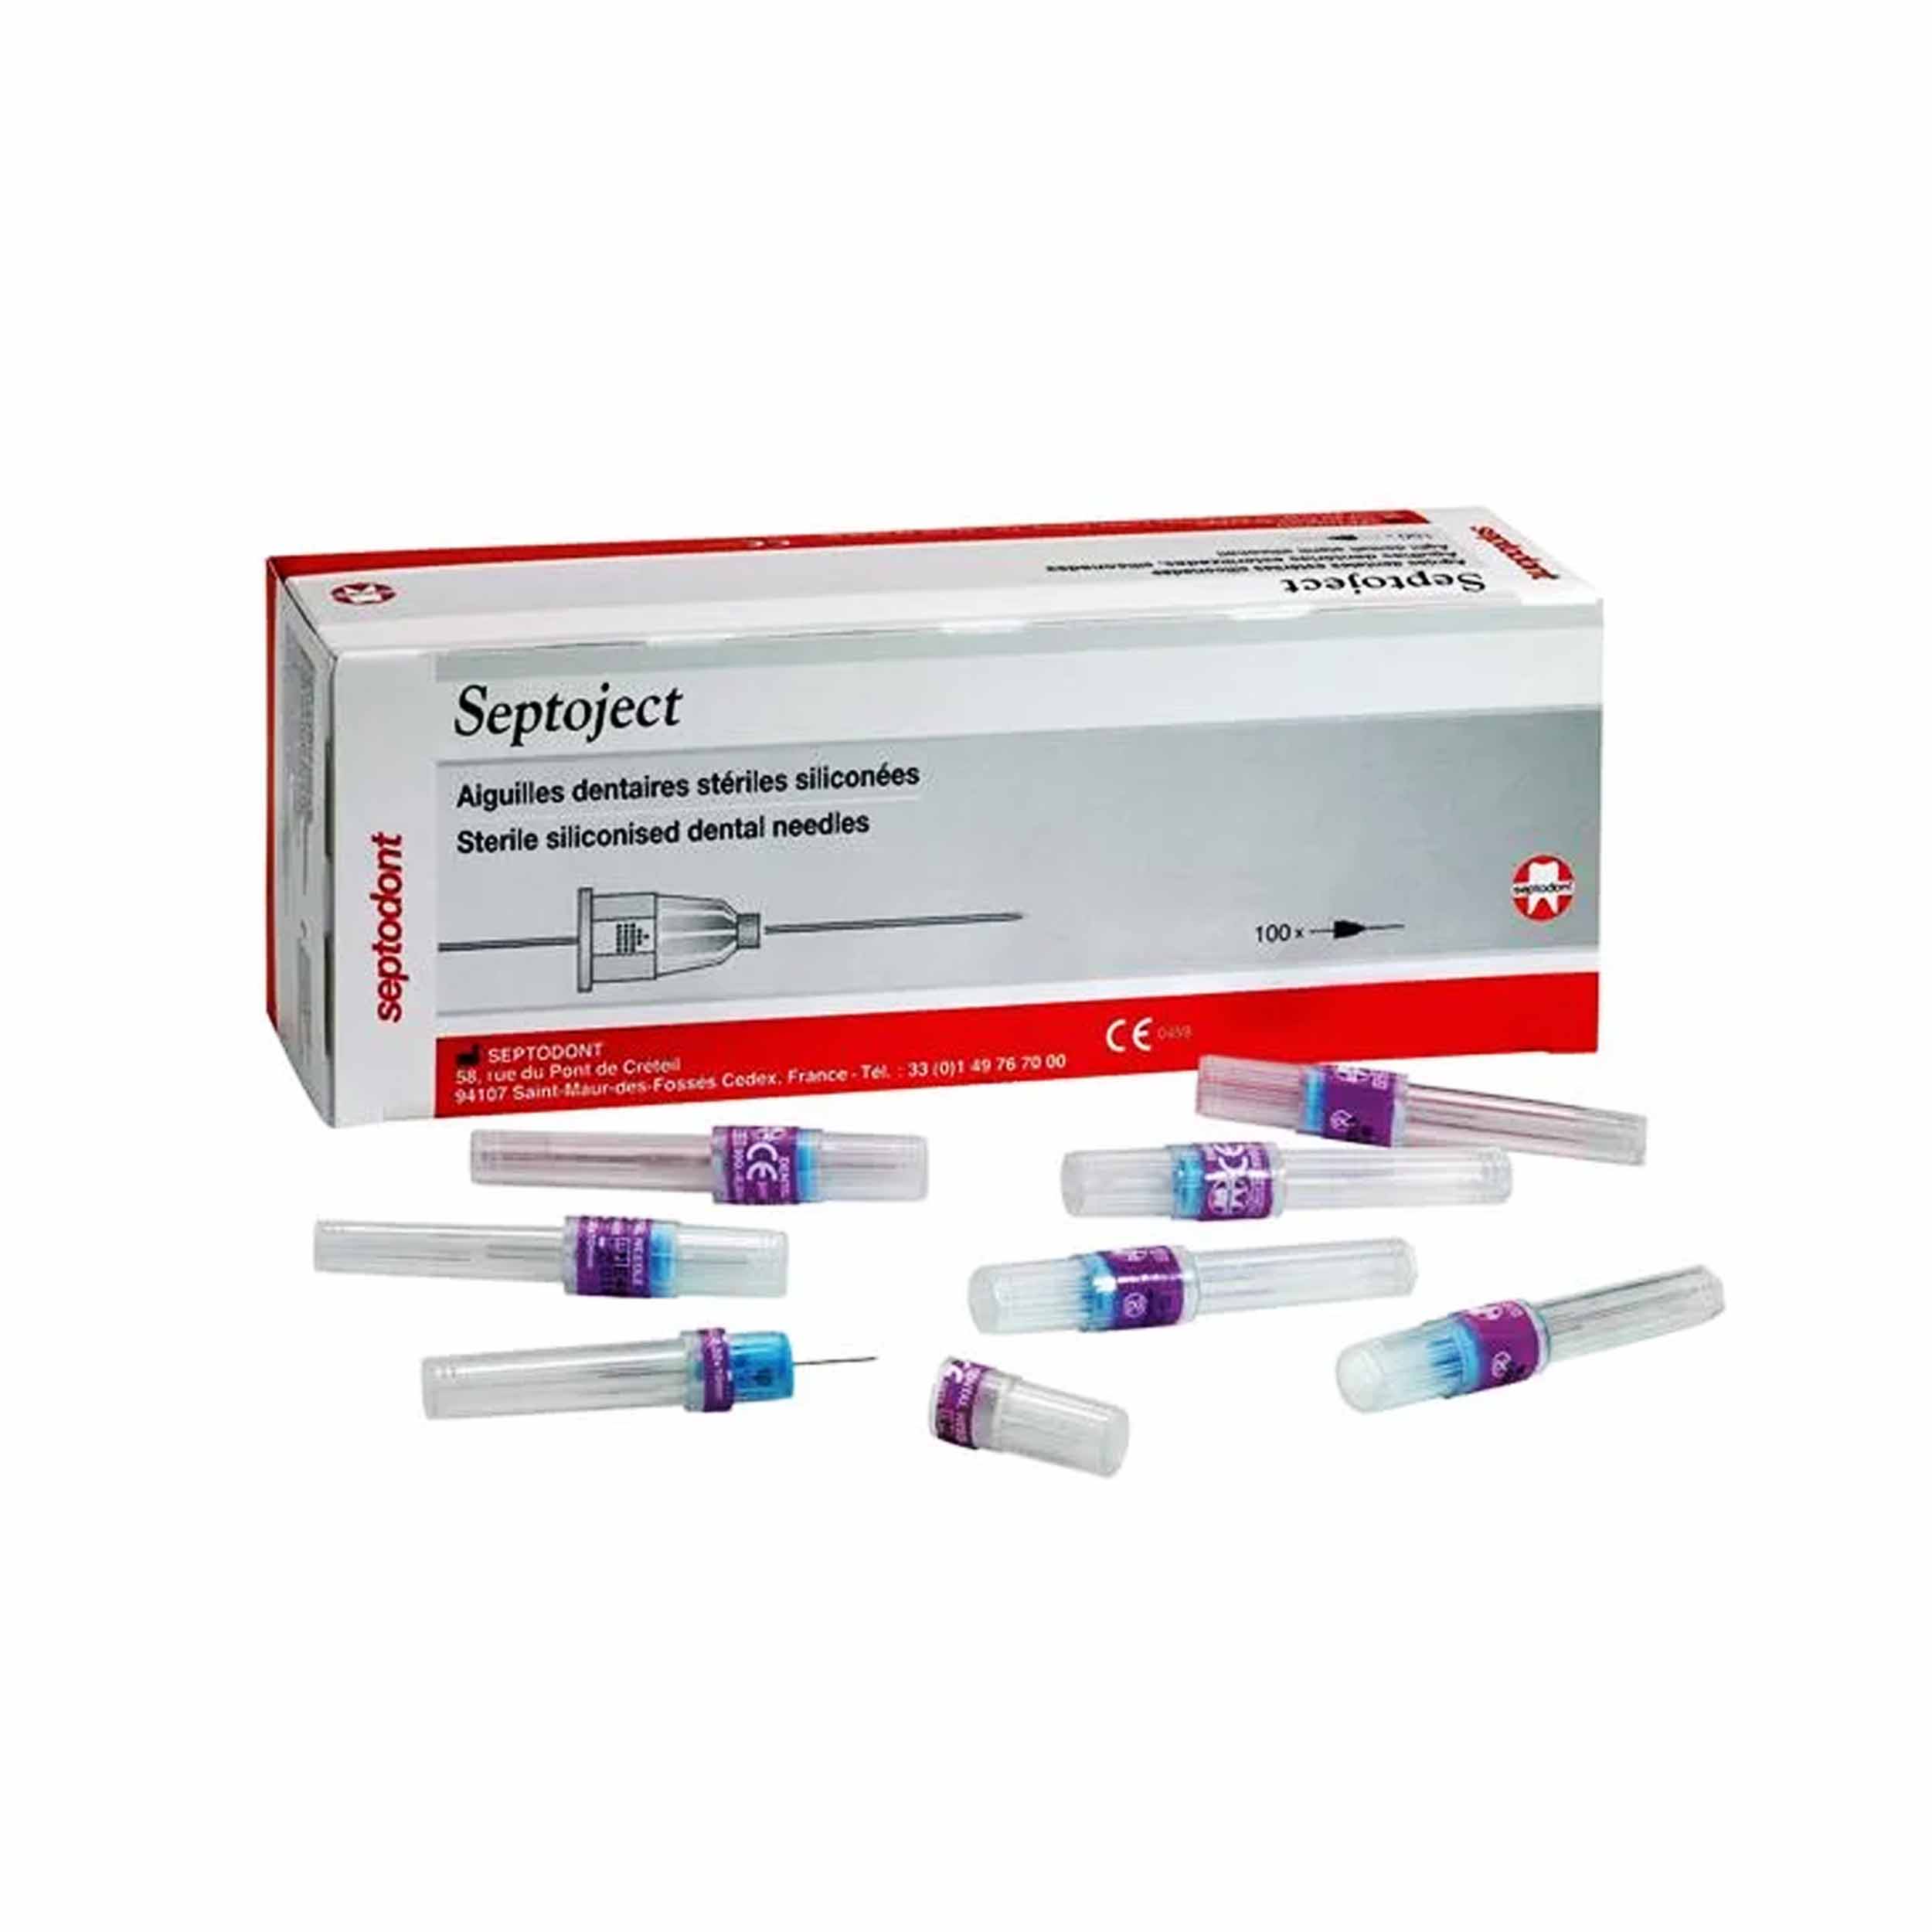 Septodont Septoject Needles For Dental Cartridge Syringe 27g/35mm